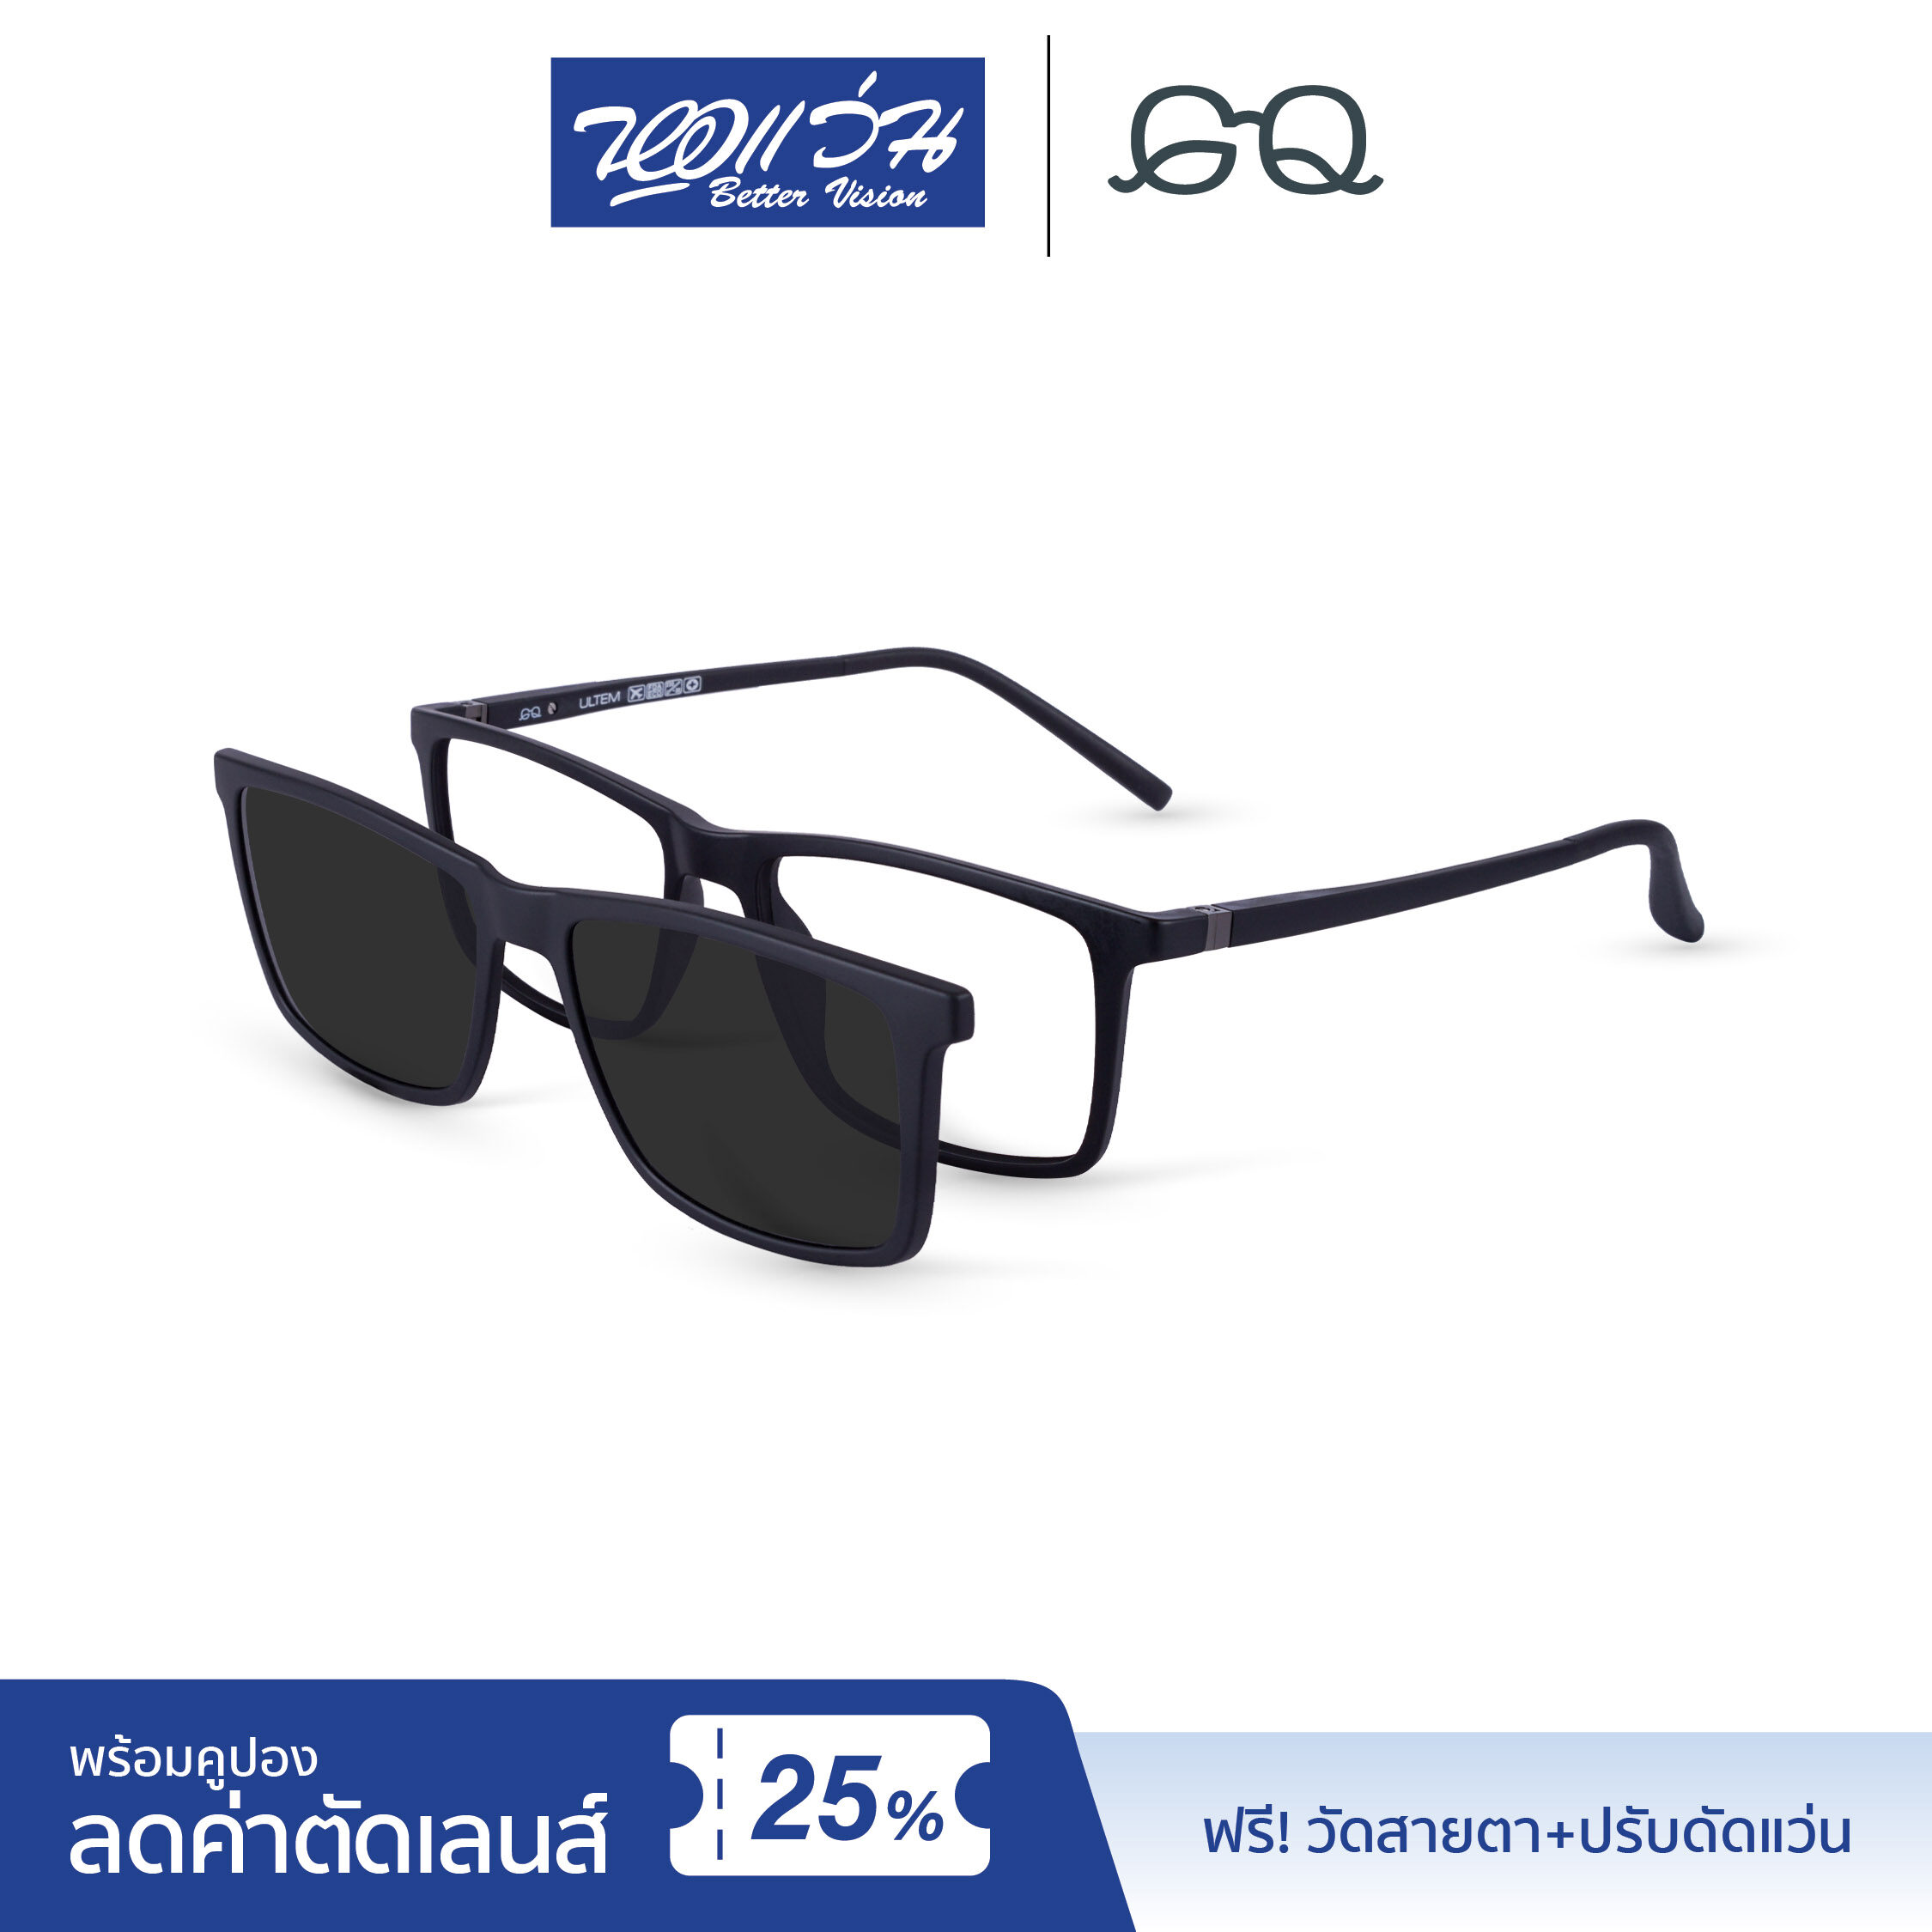 กรอบแว่นตาคลิปออน จีคิว GQ Eyeglasses แถมฟรีส่วนลดค่าตัดเลนส์ 25% free 25% lens discount รุ่น Nick